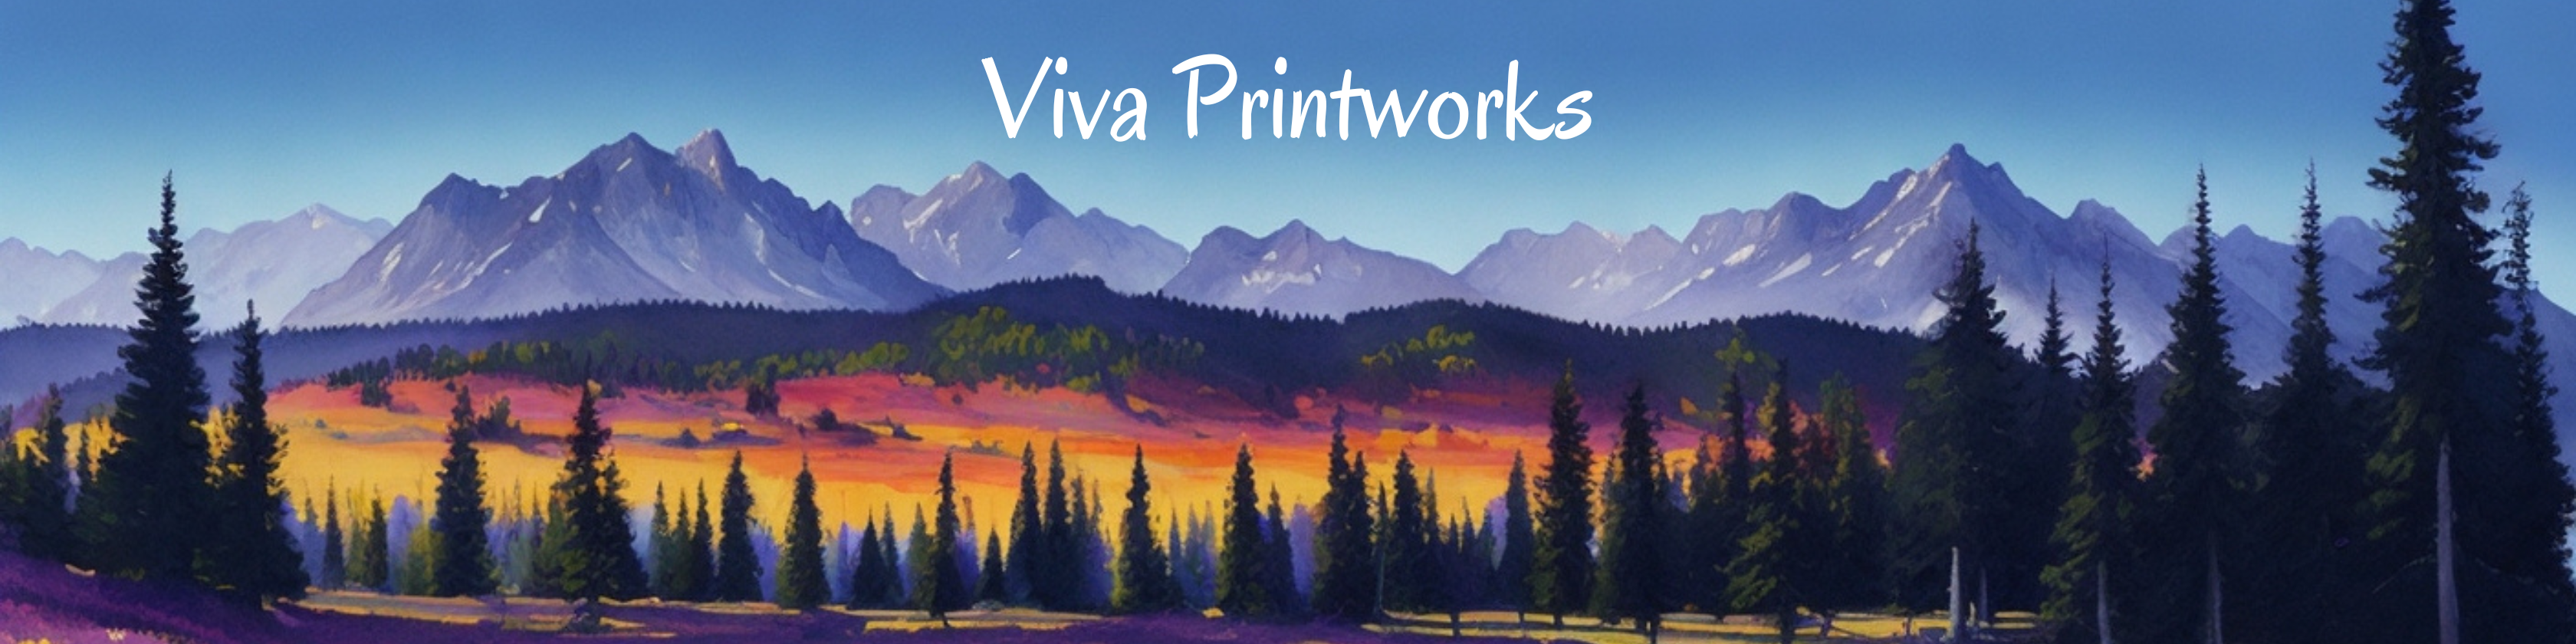 Viva Printworks Banner | Link to Etsy shop